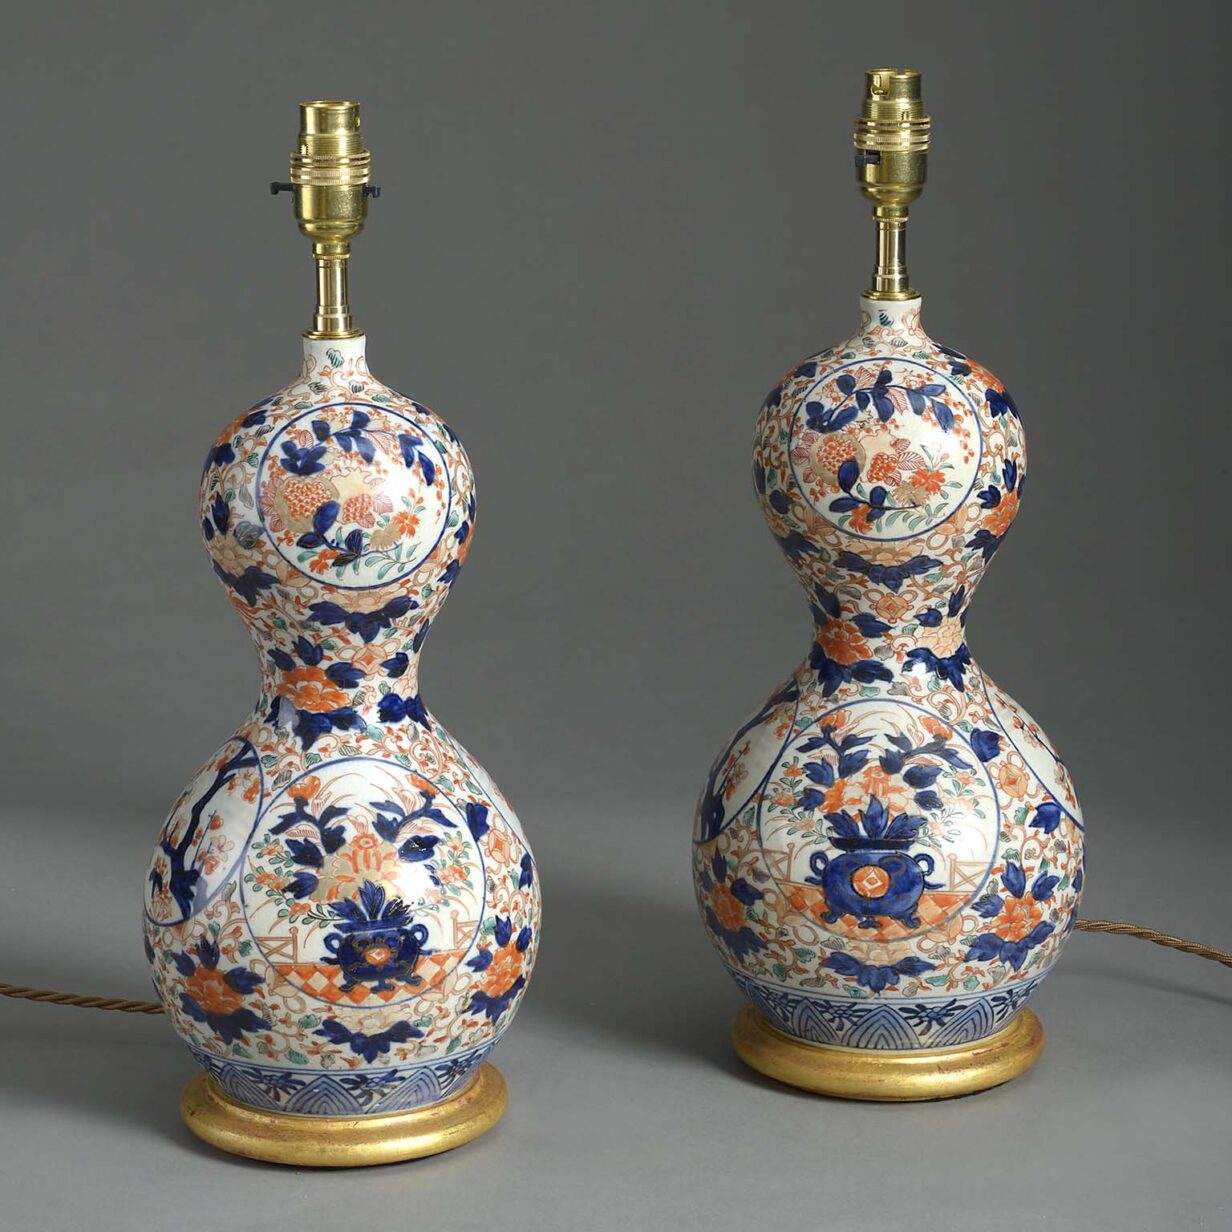 Pair of imari porcelain vases